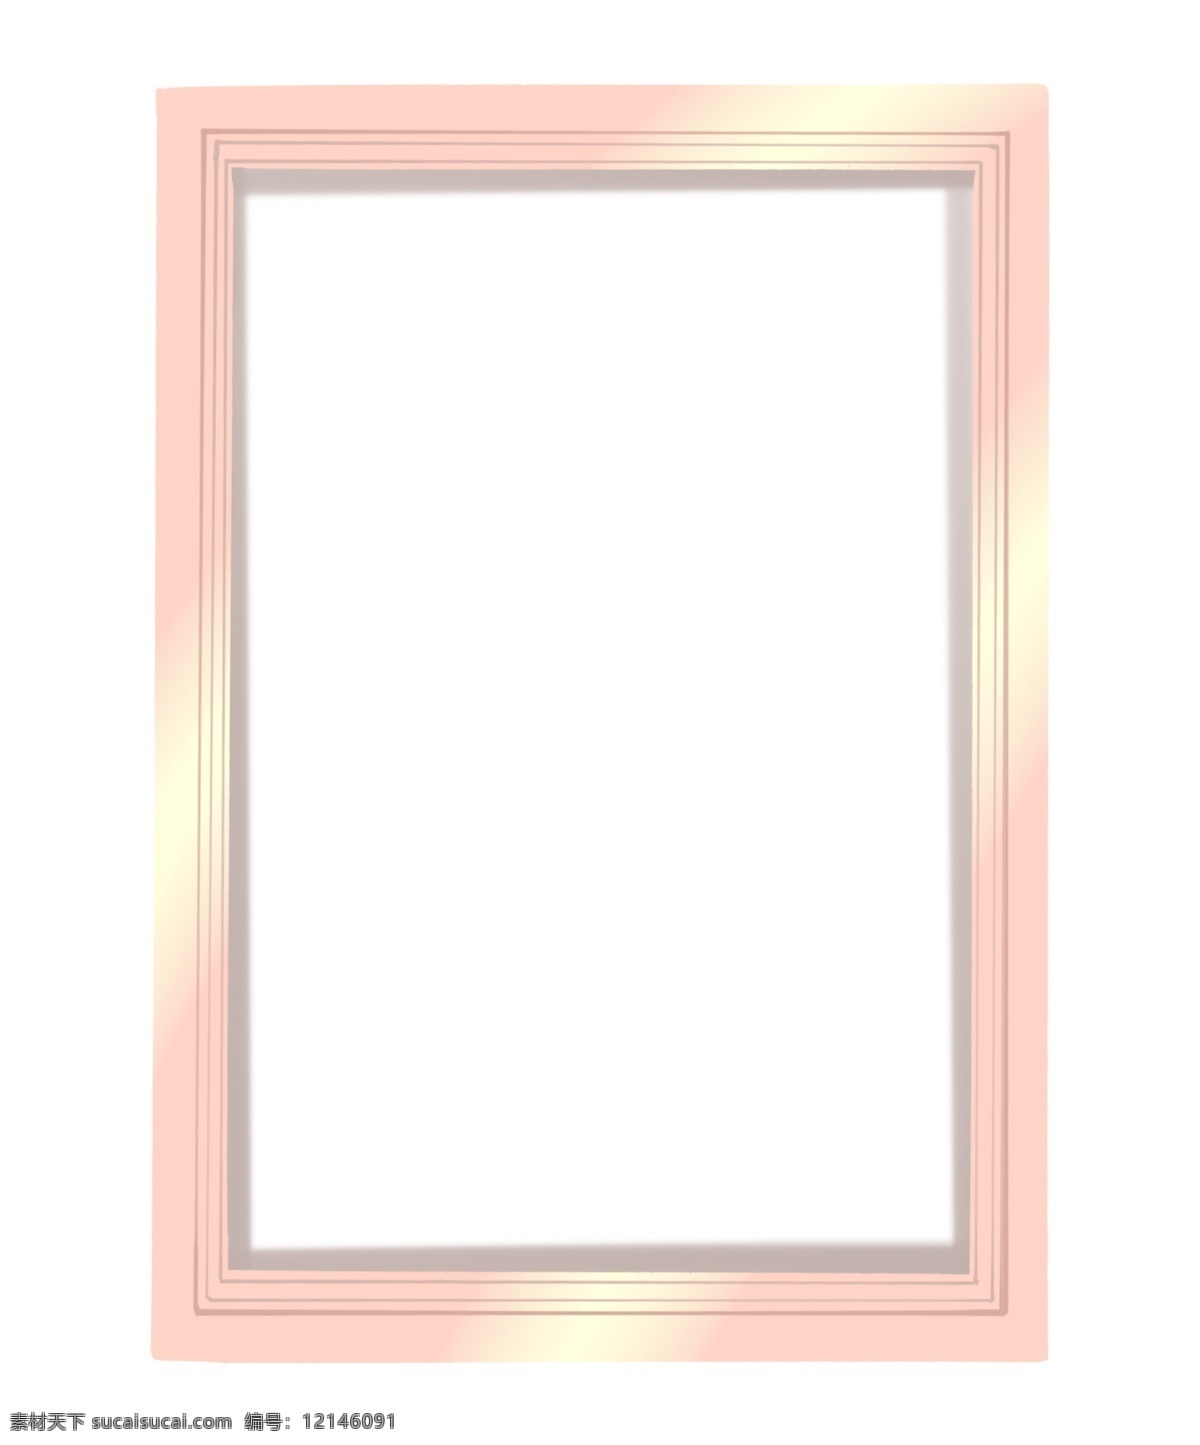 粉色 相框 卡通 插画 粉色的相框 相框插画 卡通插画 简易相框 照片 框架 框子 长方形相框